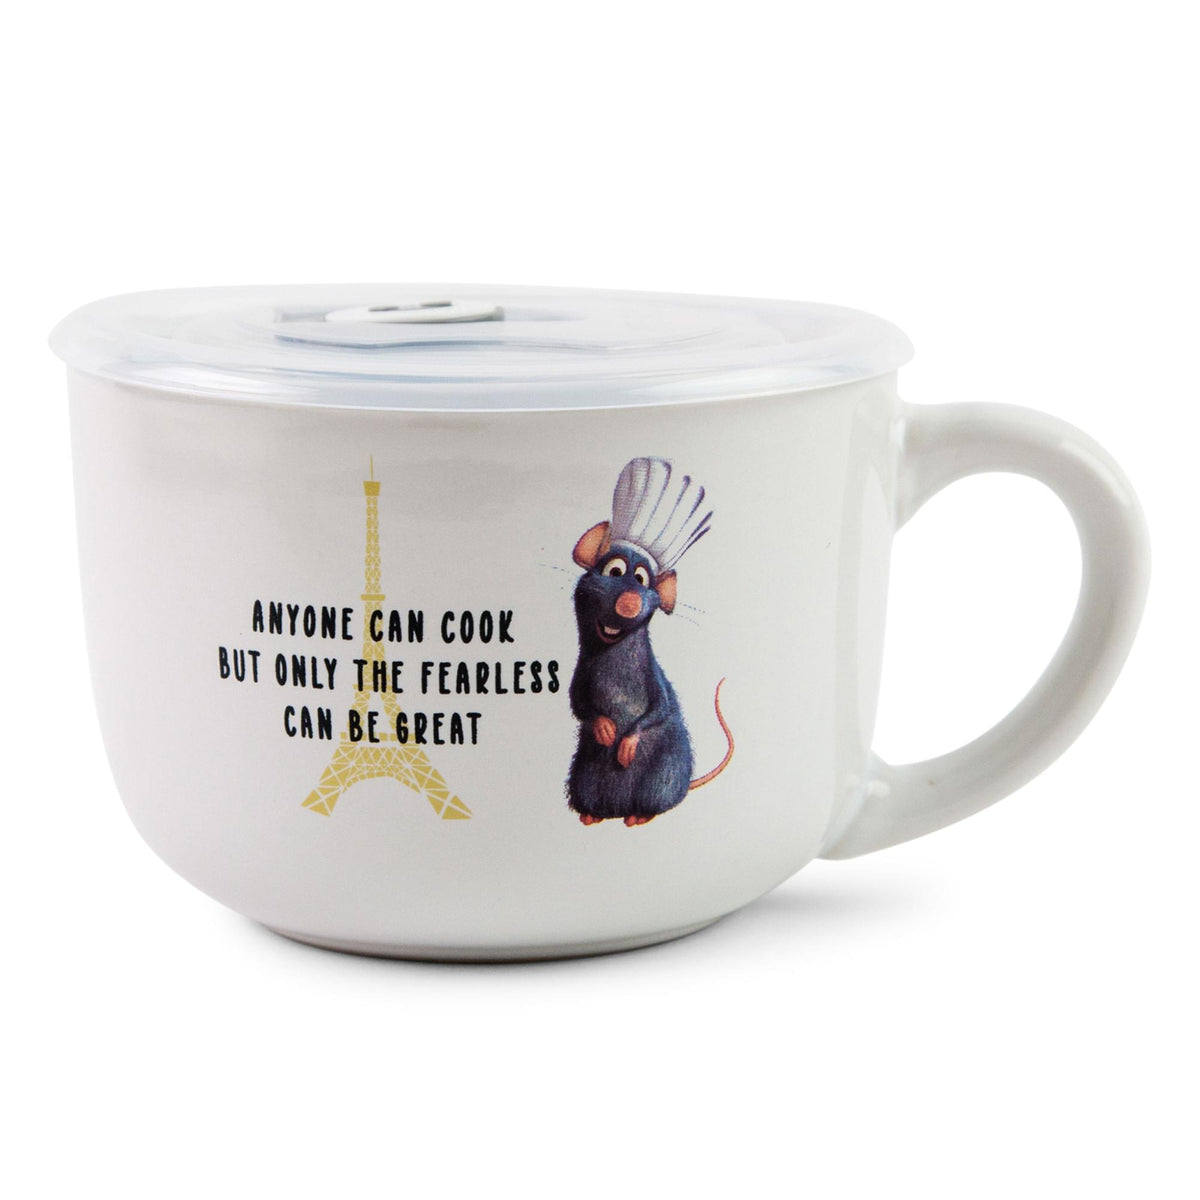 Disney Princess I Woke Up Like This Ceramic Camper Mug | Holds 20 Ounces